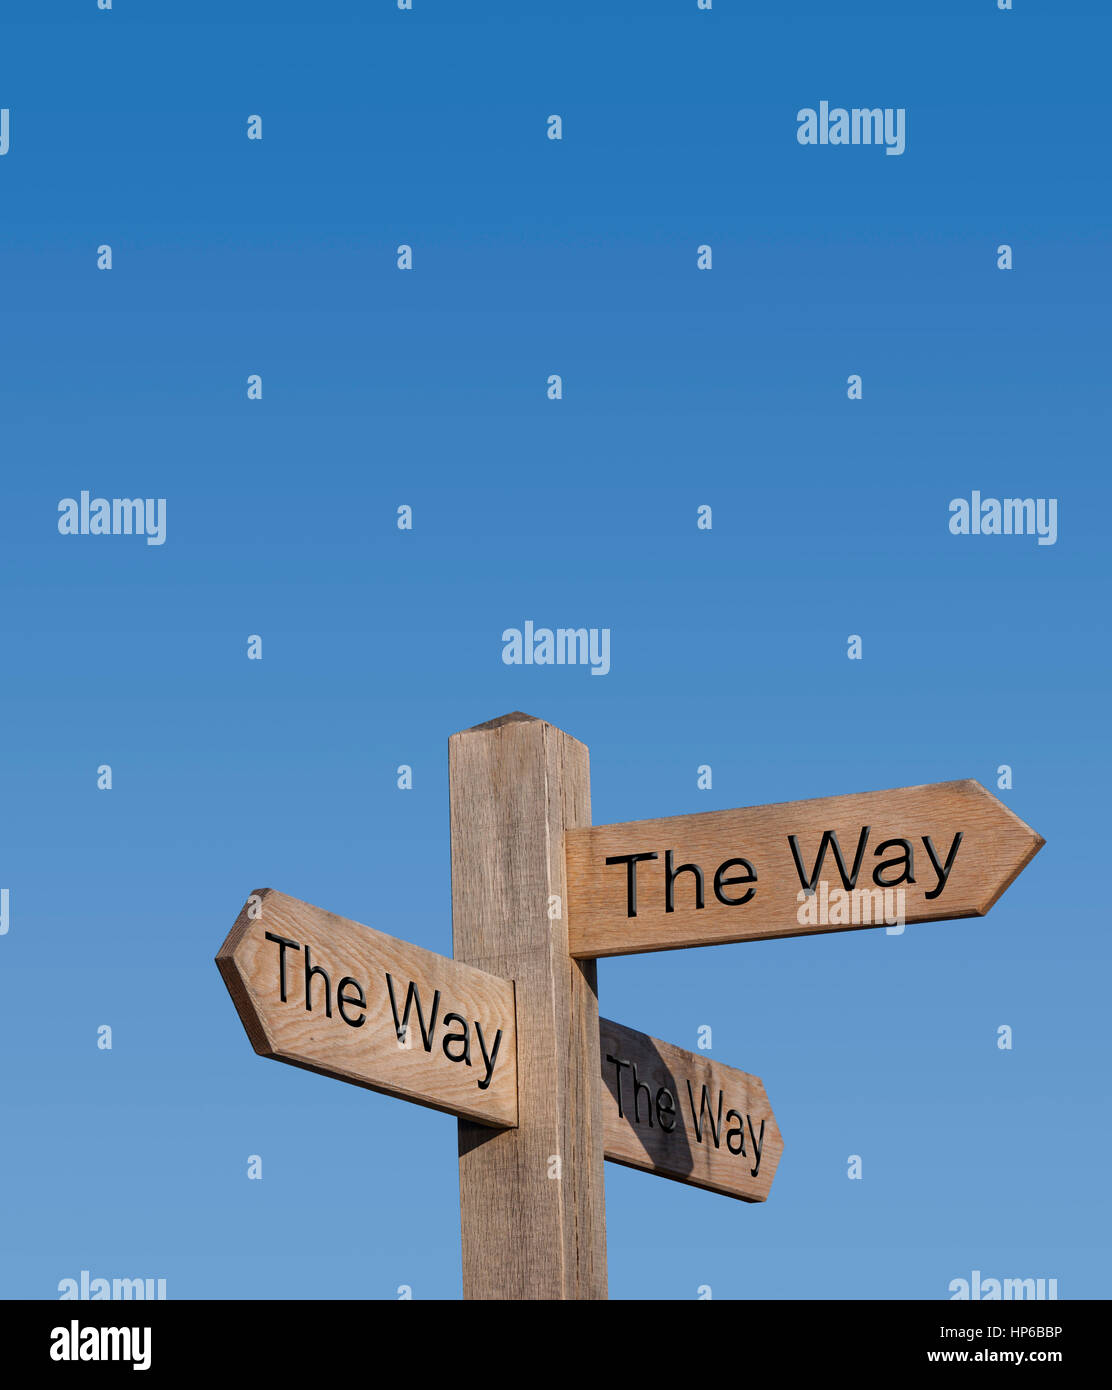 La manière d'aller. Poteau de signalisation, signe, post, chemin, route, concept, toujours de la bonne façon. Banque D'Images